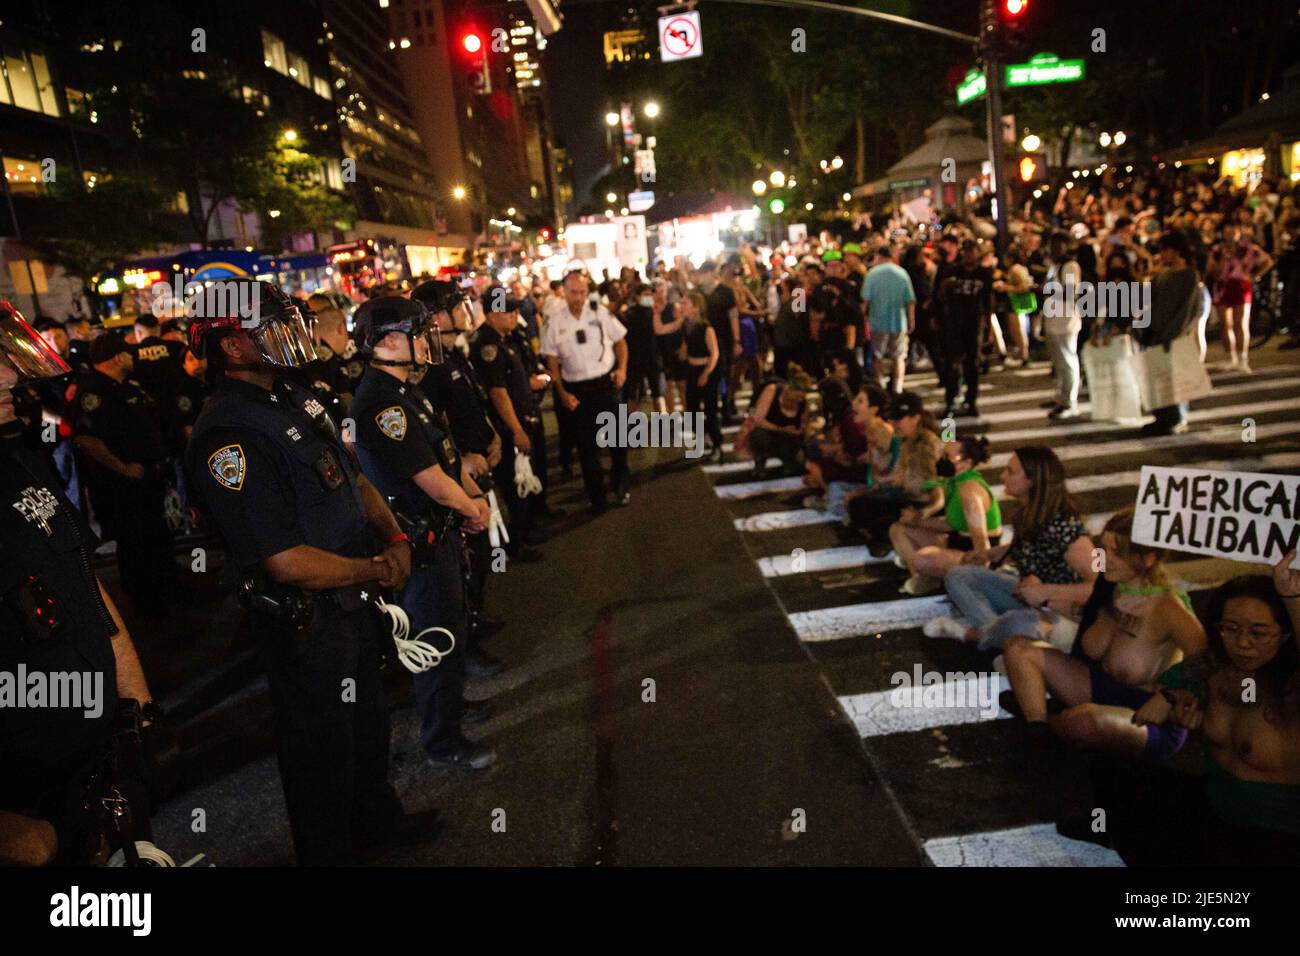 Die NYPD macht sich bereit, während der Demonstration Festnahmen zu machen. Abtreibungsbefürworter überfluteten die Straßen, die vom Washington Square Park zum Bryant Park marschierten, nachdem der Oberste Gerichtshof Roe V Wade durch ein Urteil gesteult hatte. Stockfoto